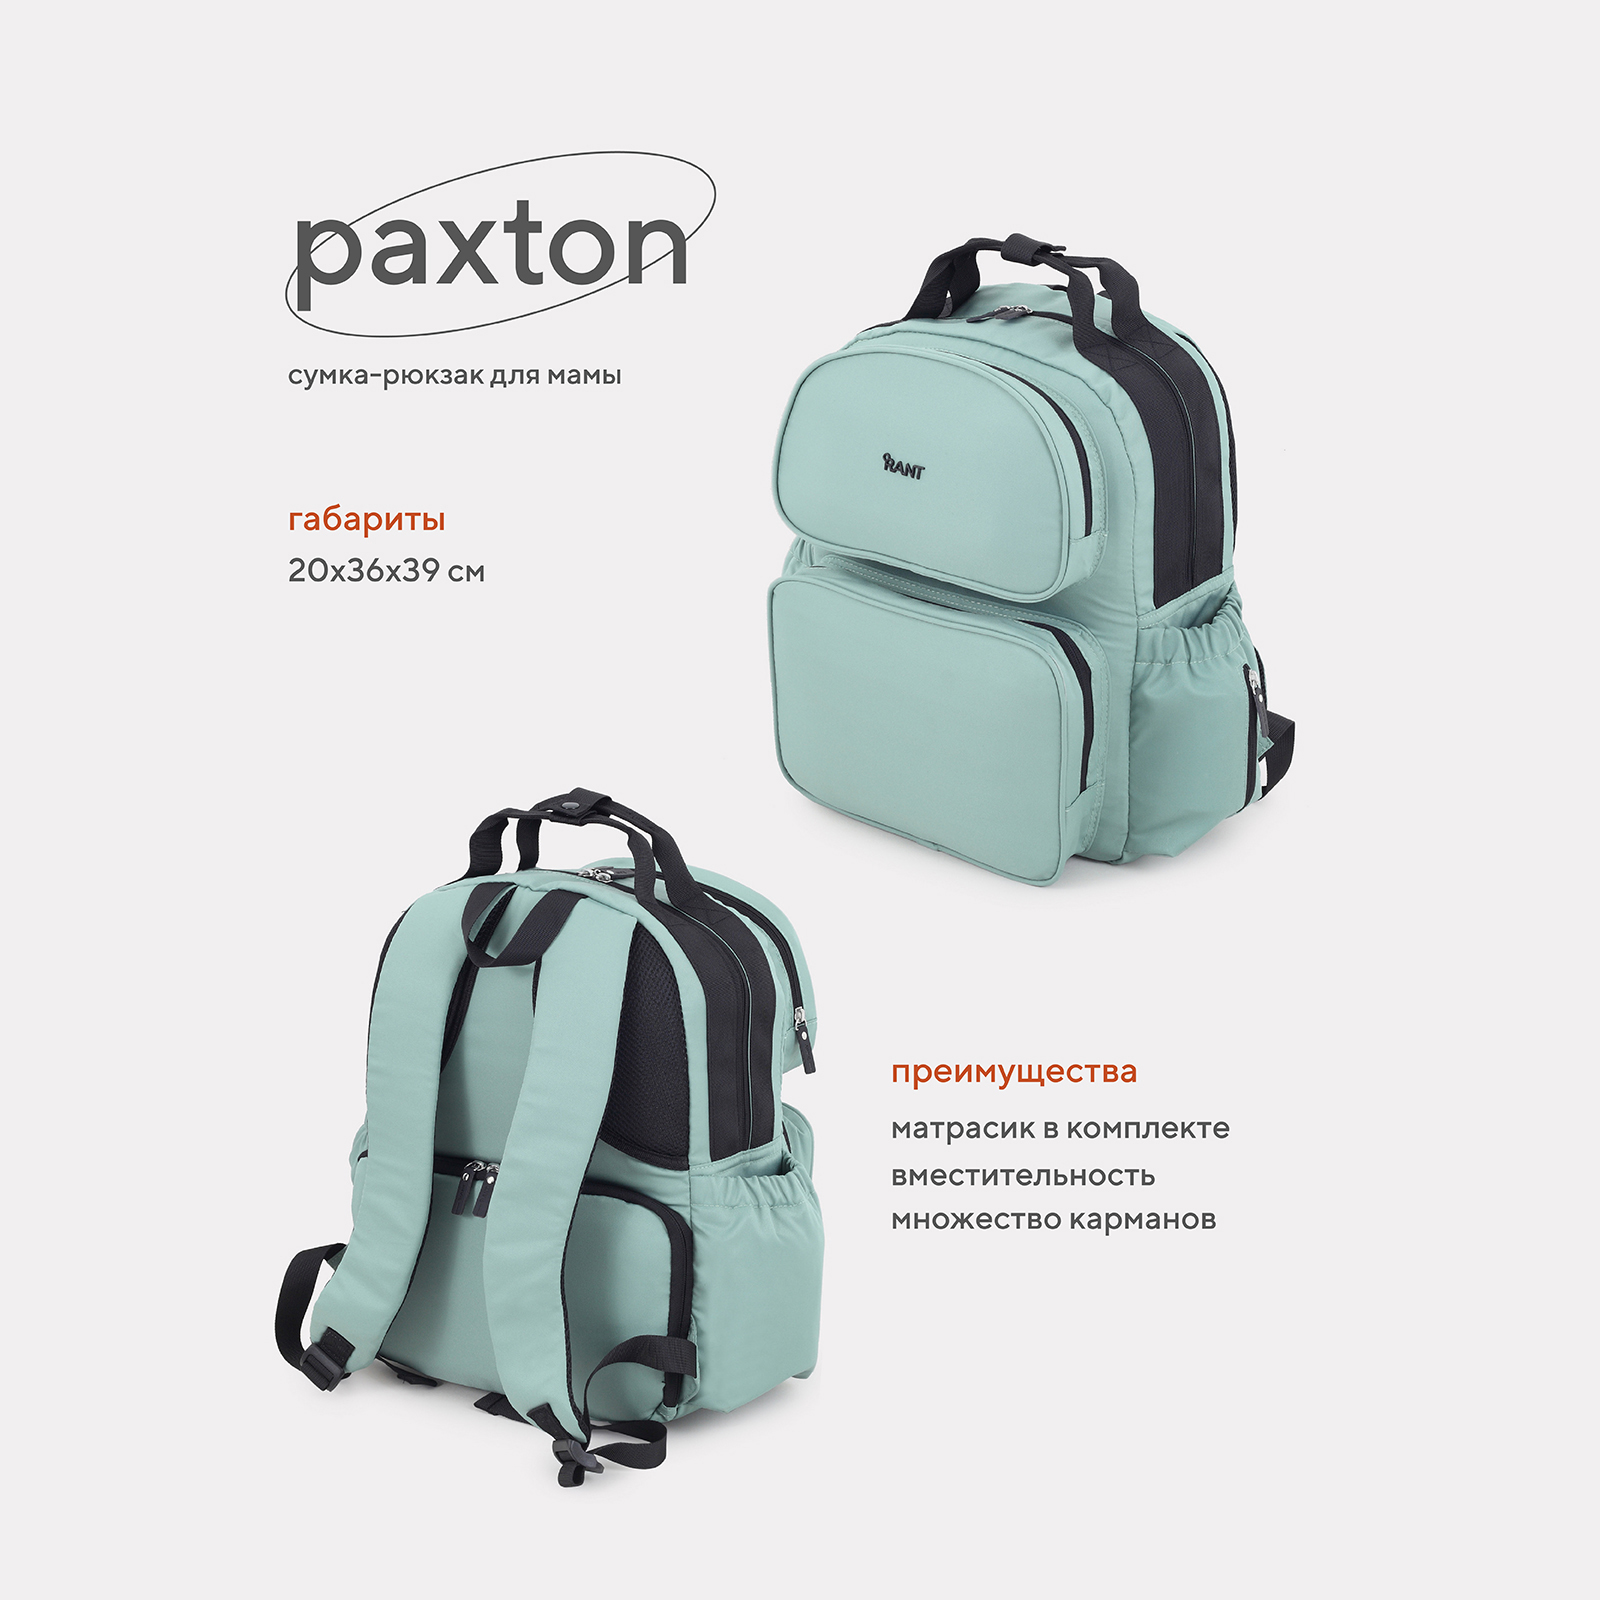 Сумка-рюкзак для мамы RANT Paxton RB008 Green сумка для коляски для мамы elodie changing bag quilted pebble green